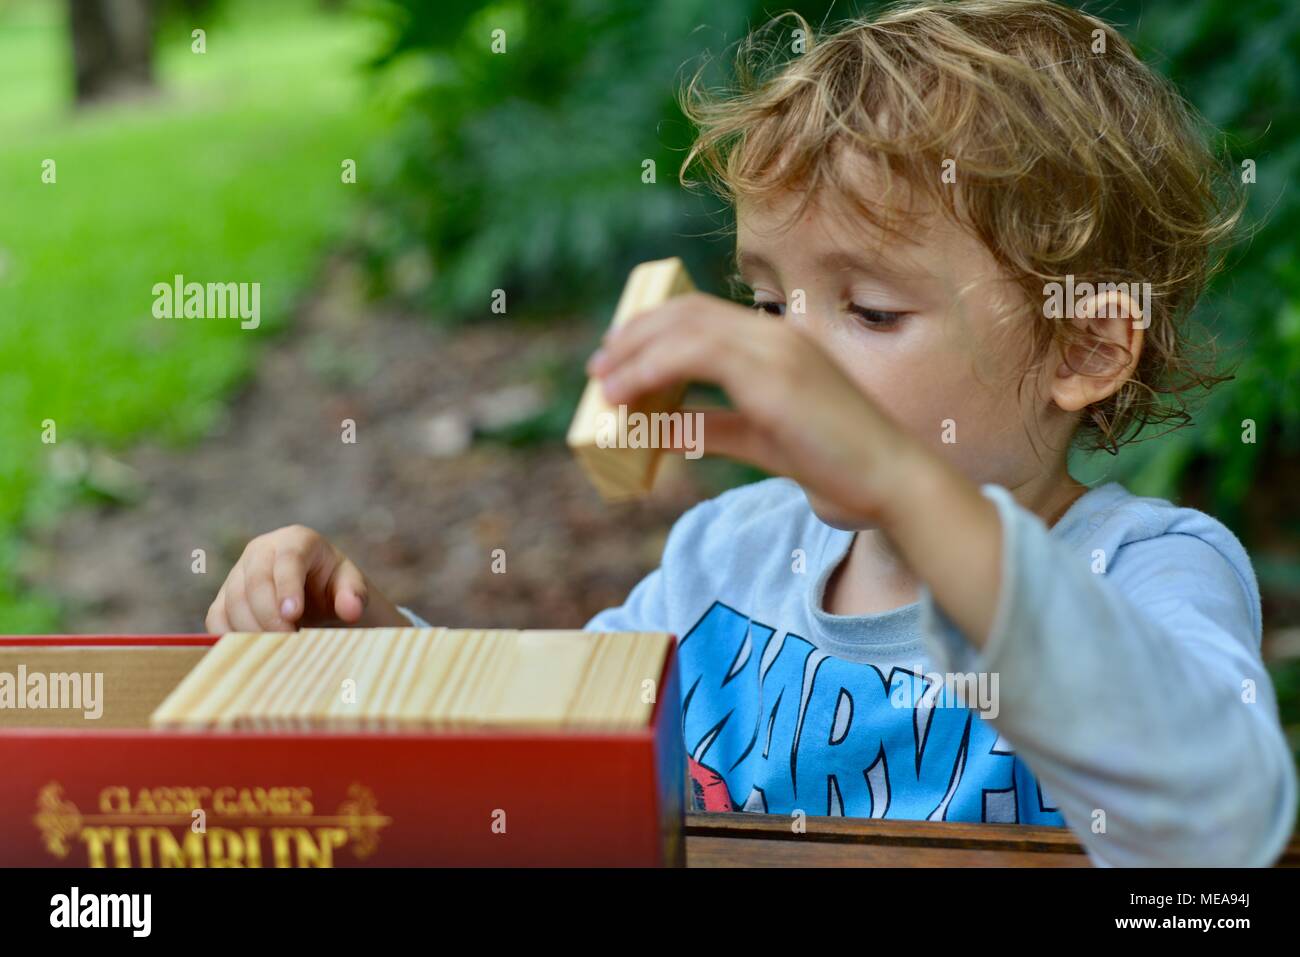 Niedliche Kind spielt mit Bausteine und die Entwicklung der Feinmotorik und Problemlösung, Townsville, QLD, Australien Stockfoto